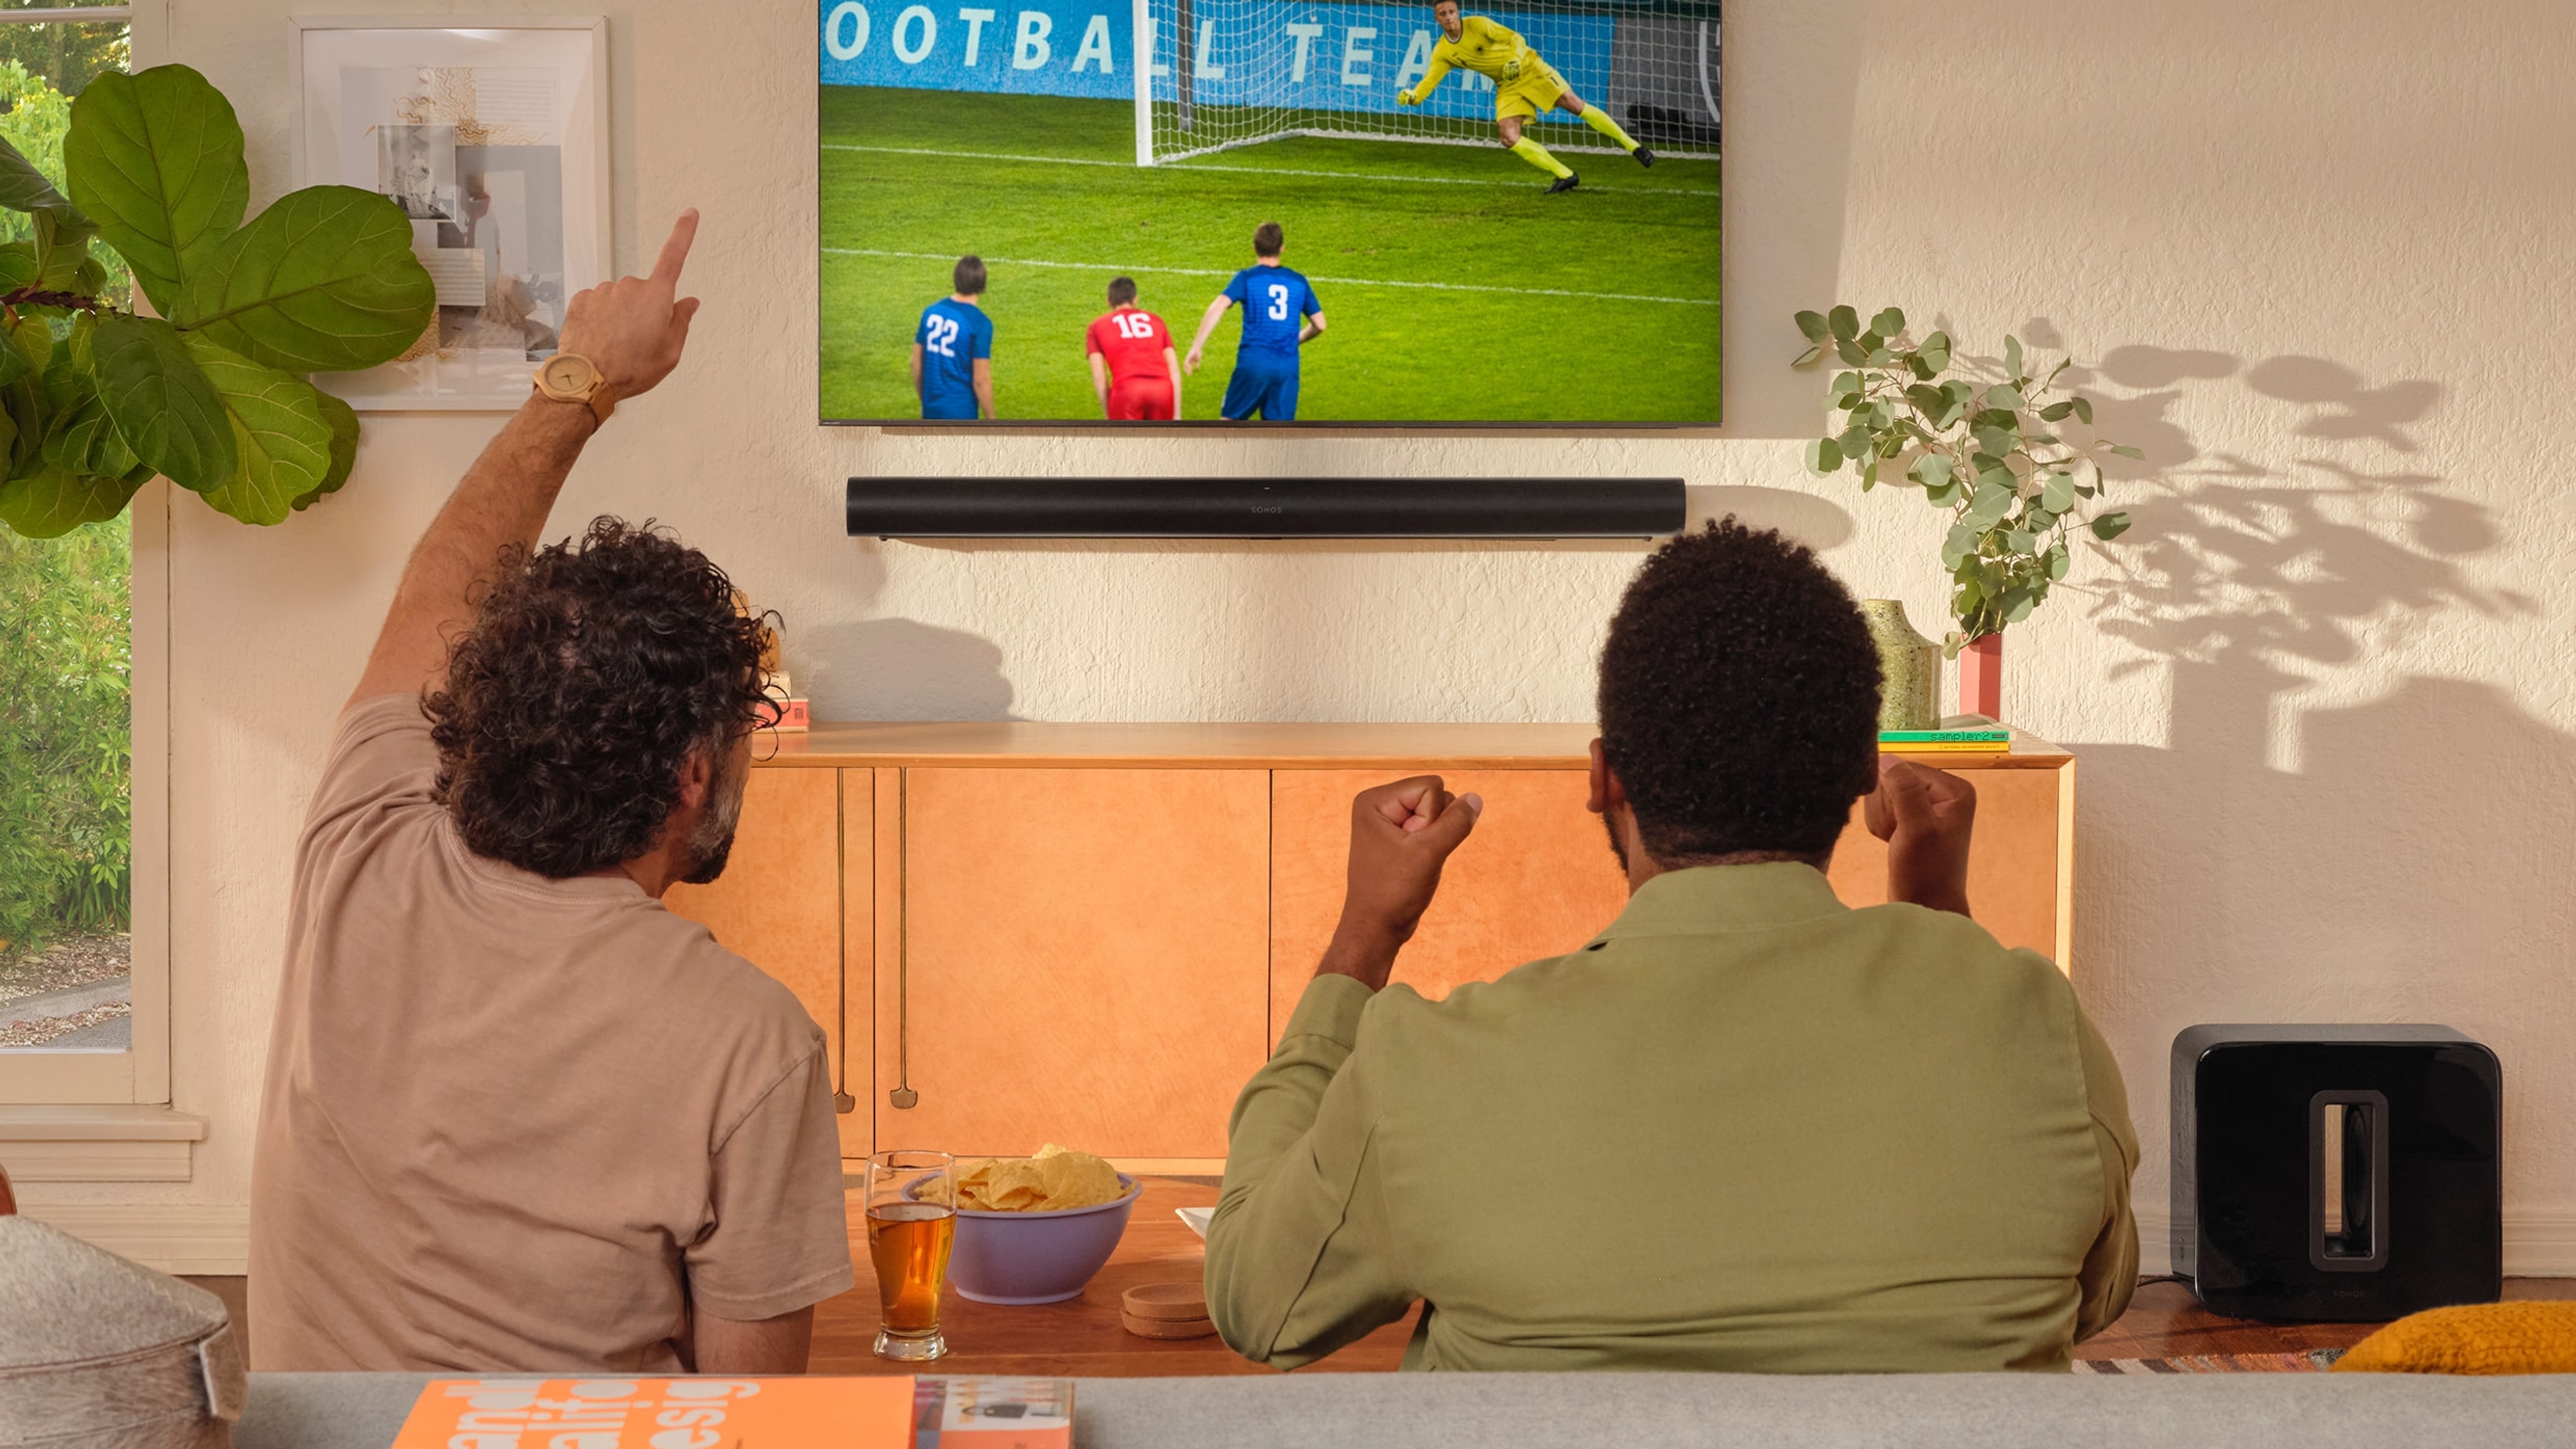 Två personer som tittar på fotboll på tv med en svart Arc och Sub